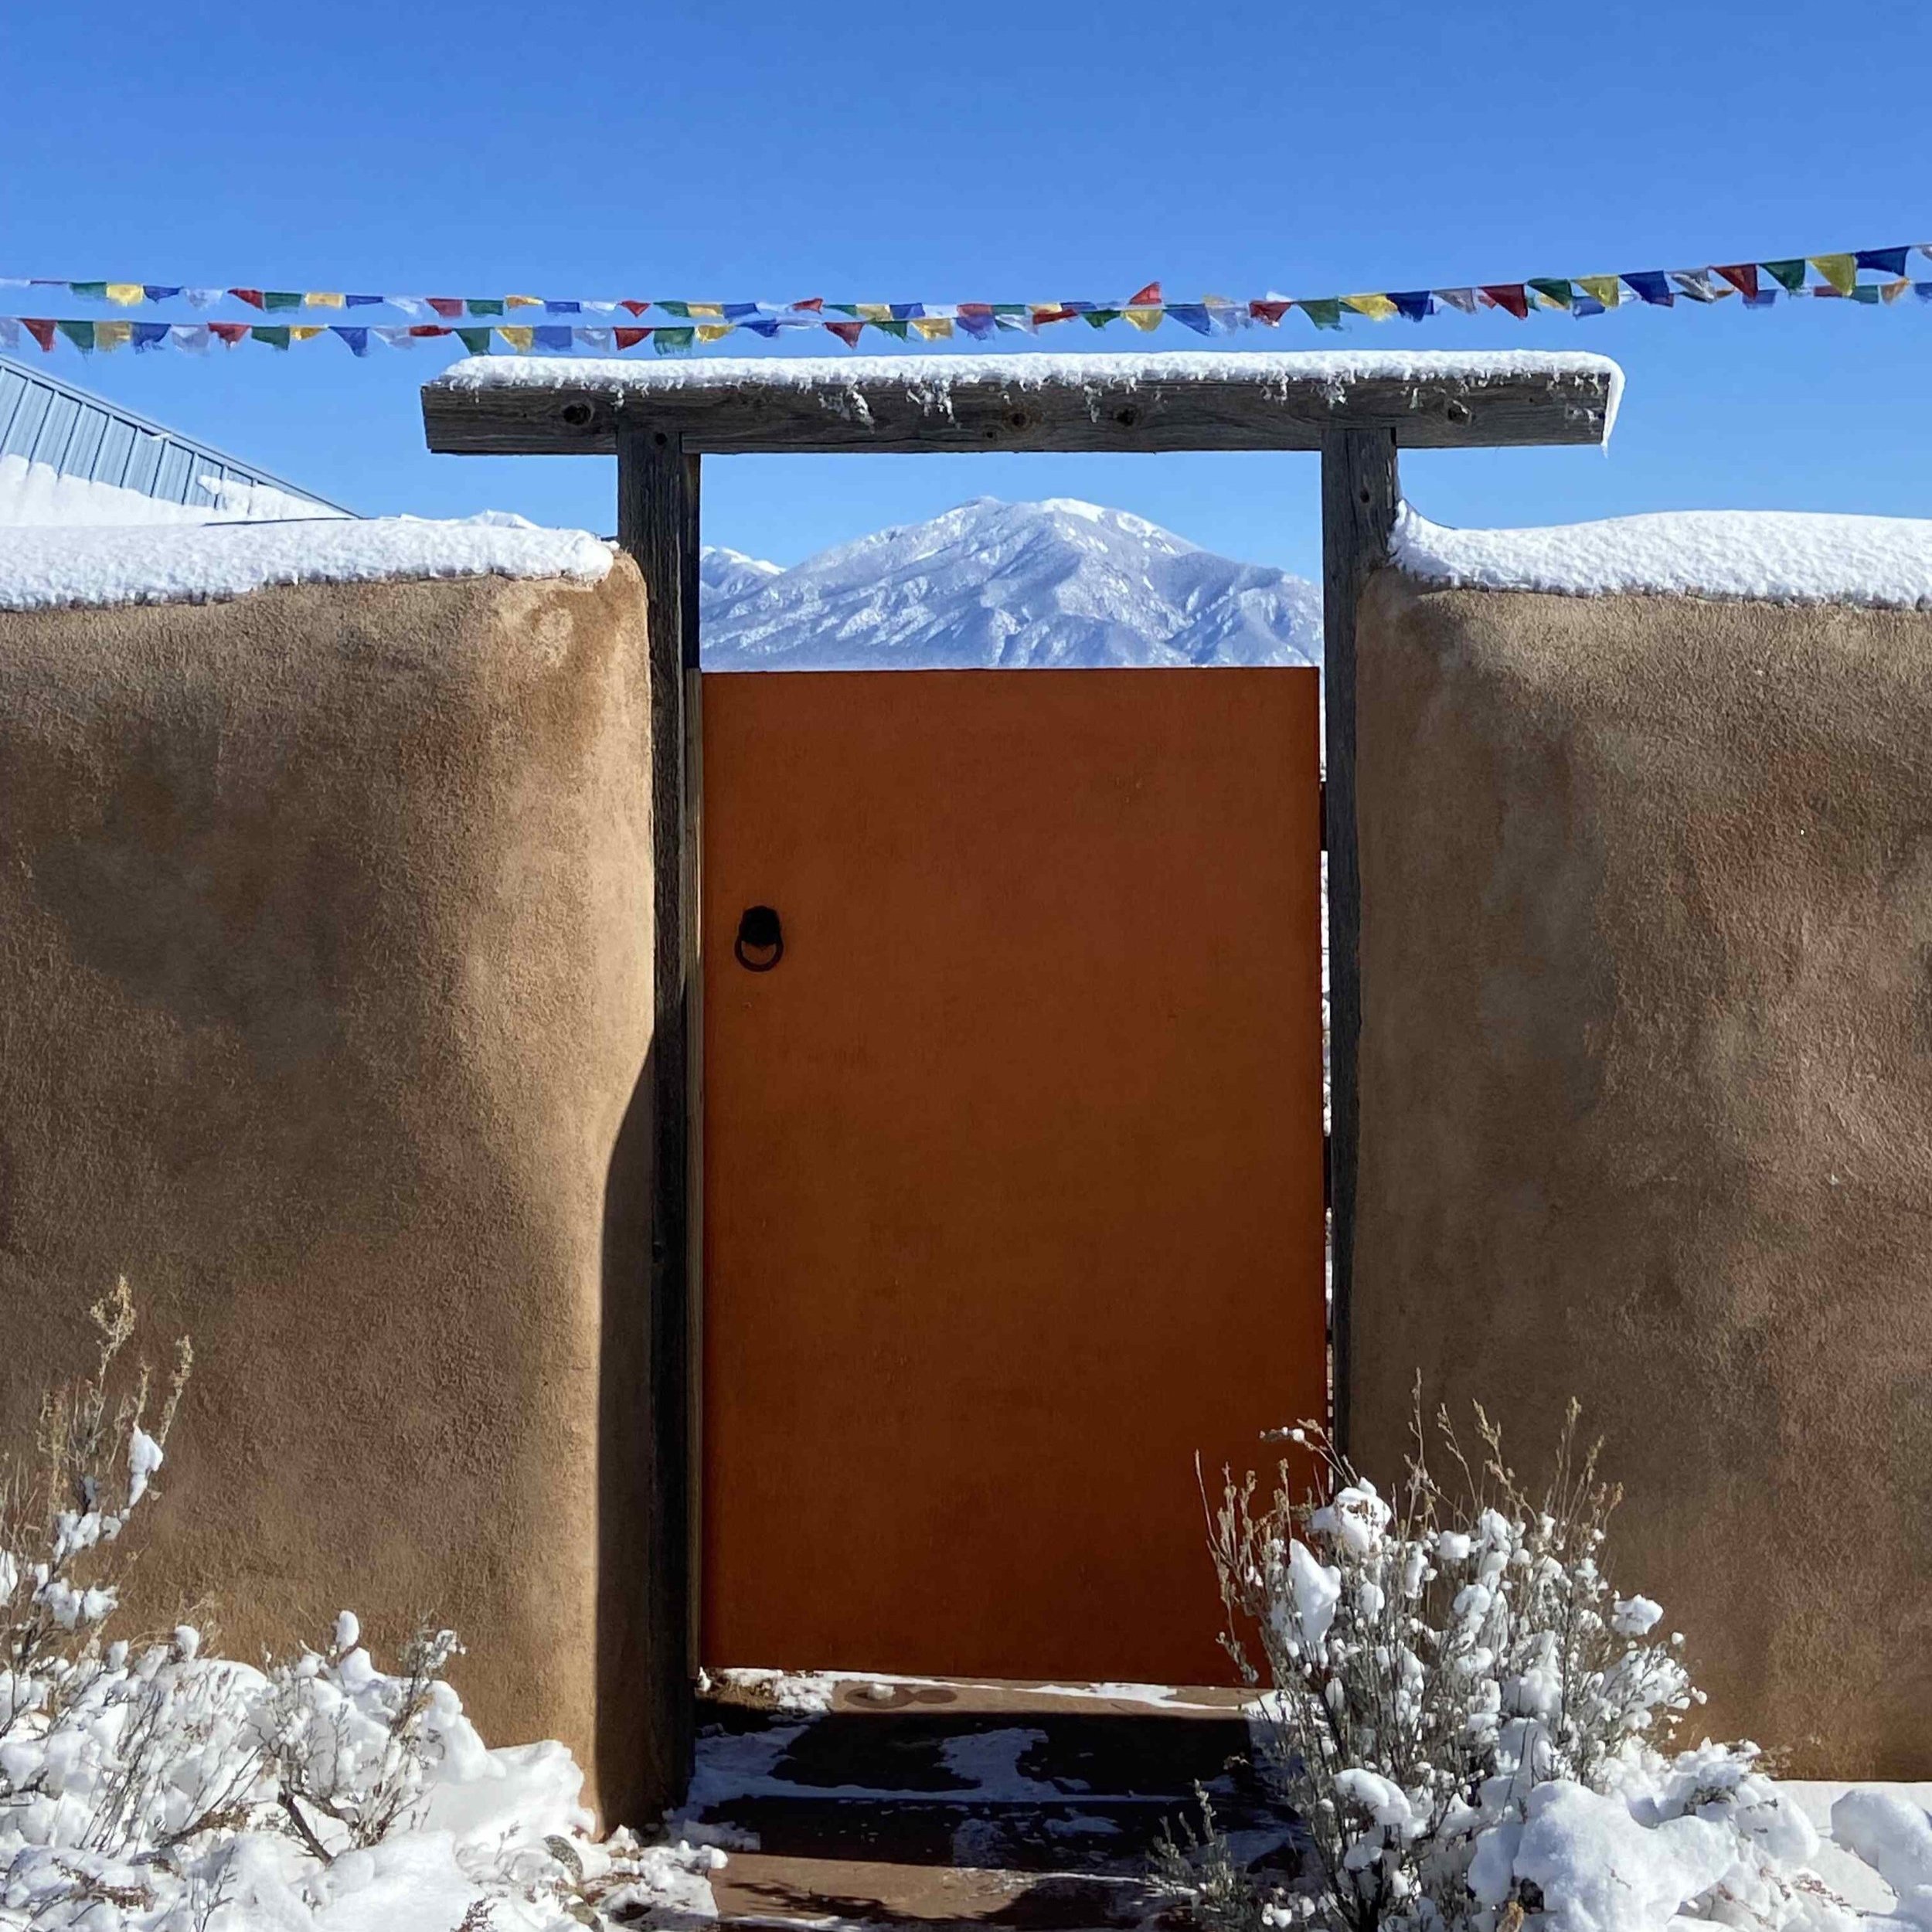 Orange gate, snow and Taos Mountain